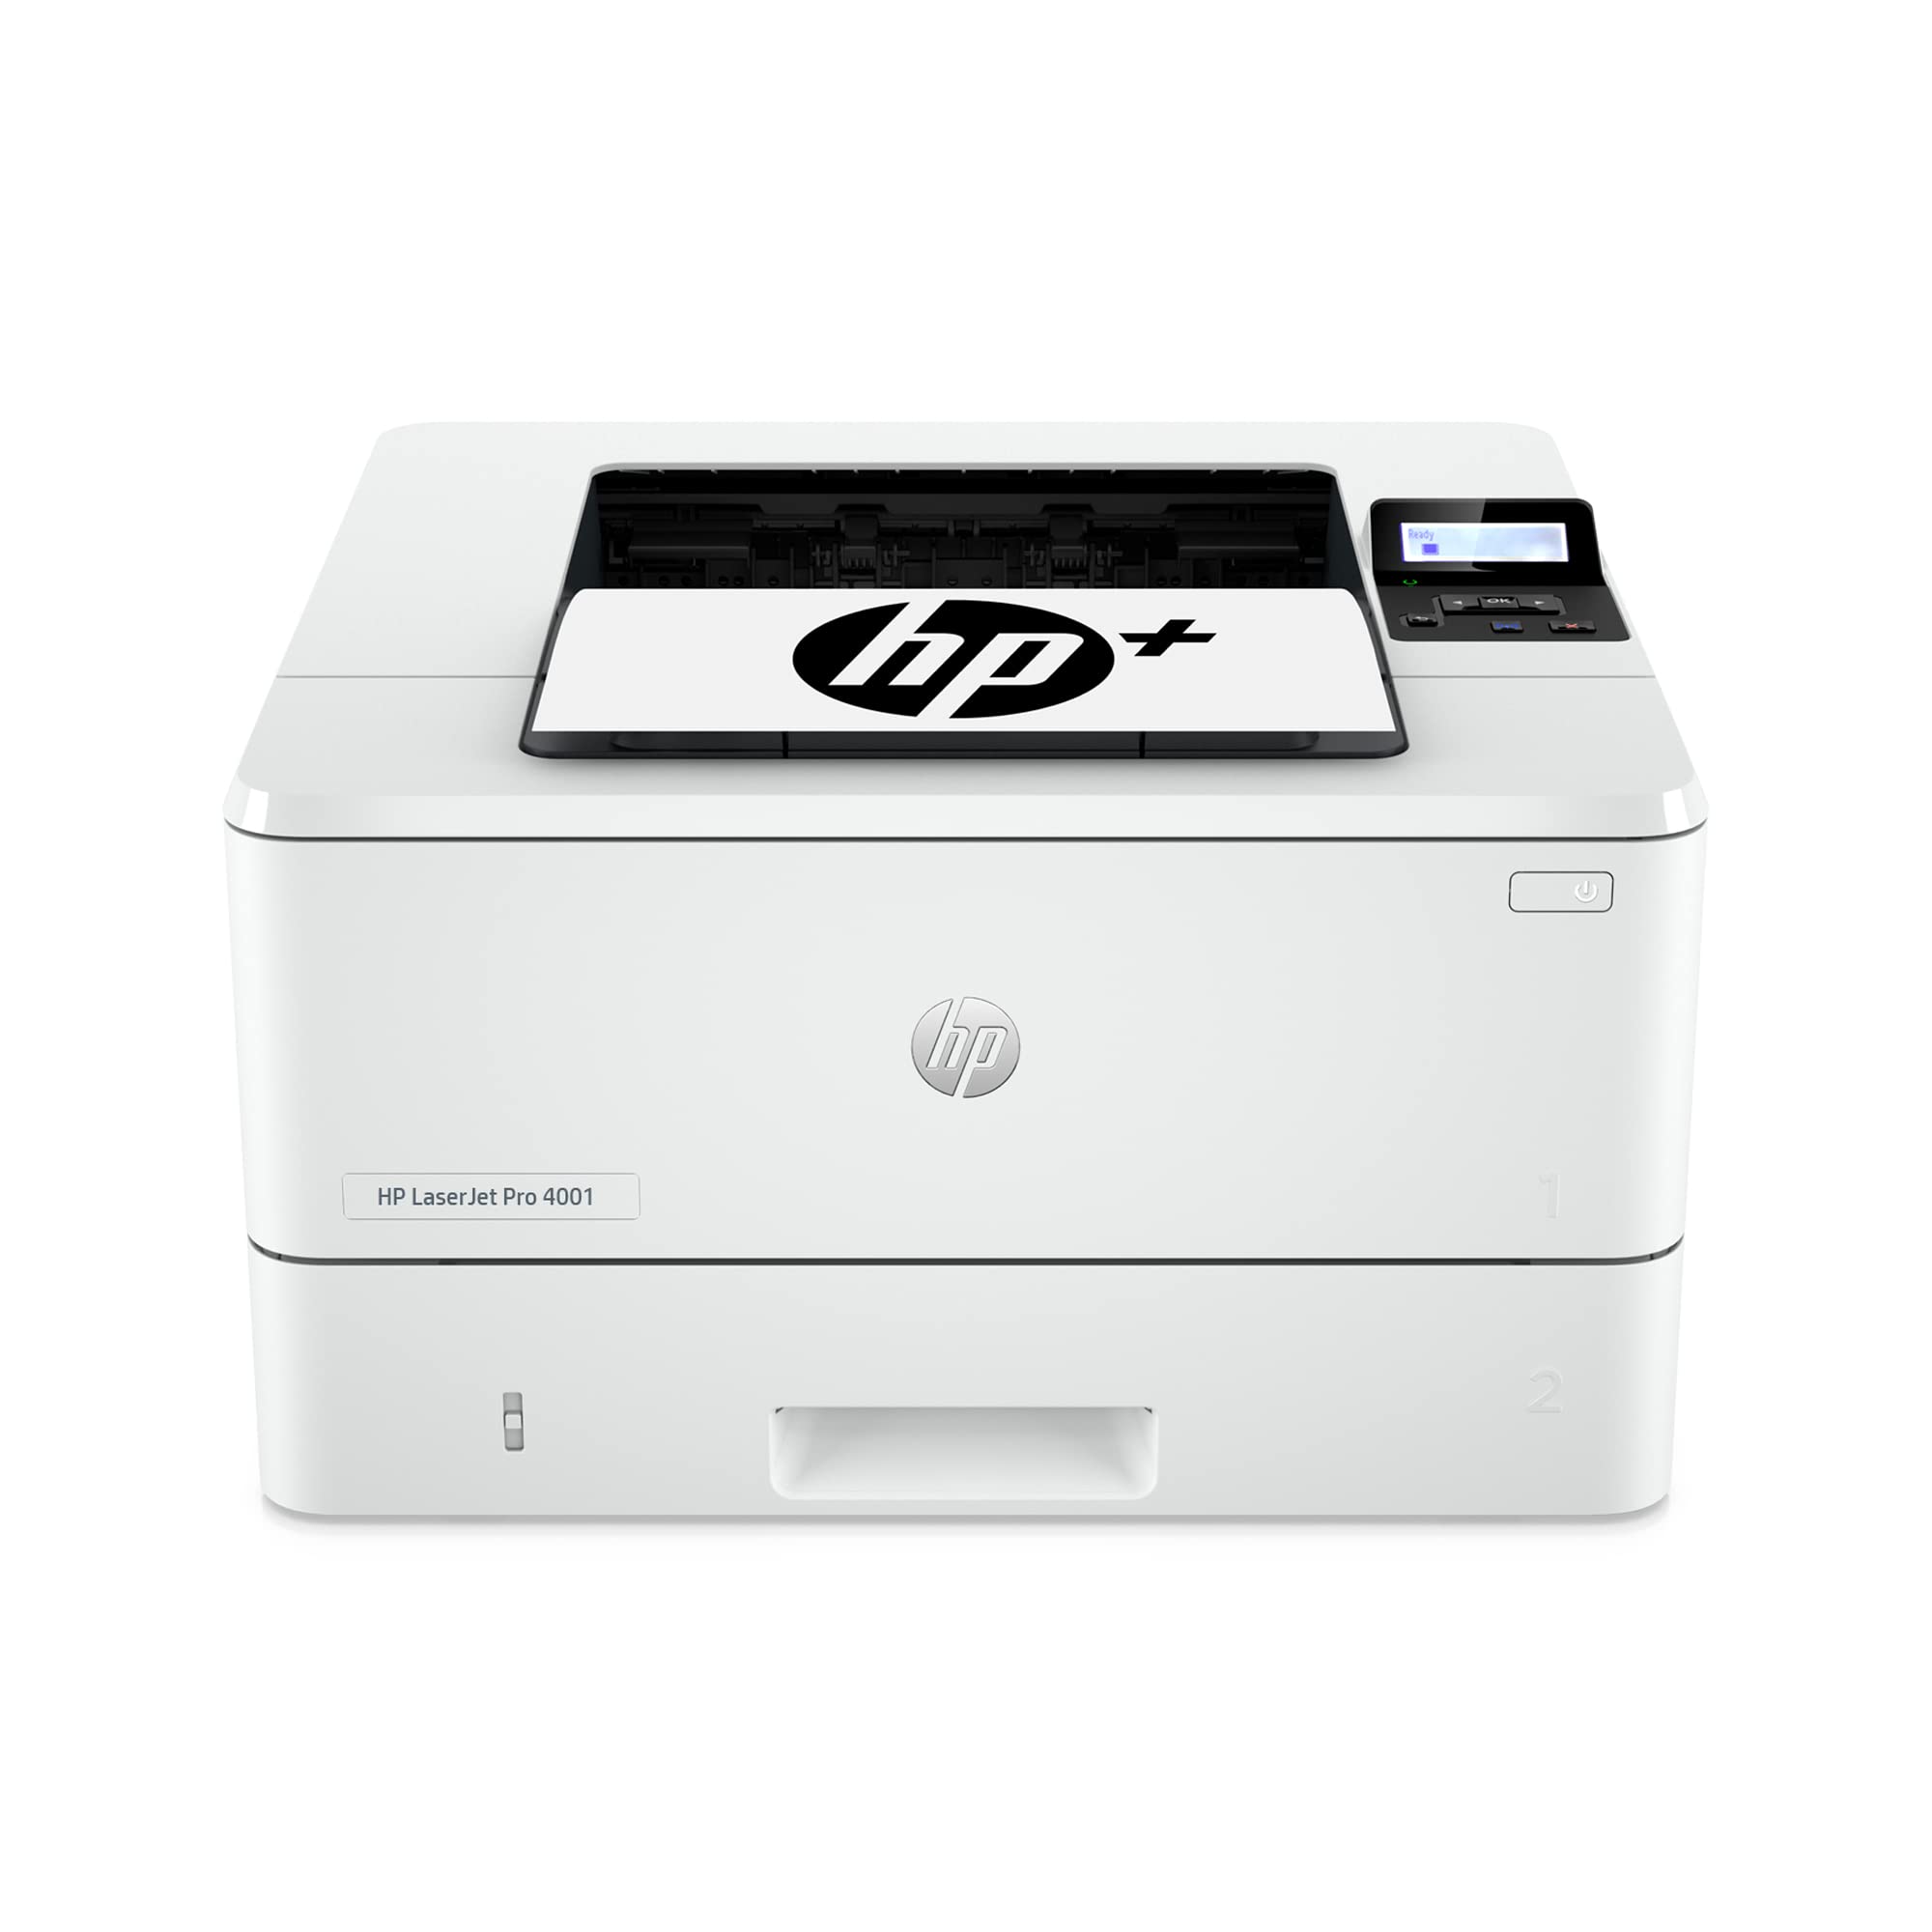 HP LaserJet Pro 4001dwe Wireless Black & White Printer ...